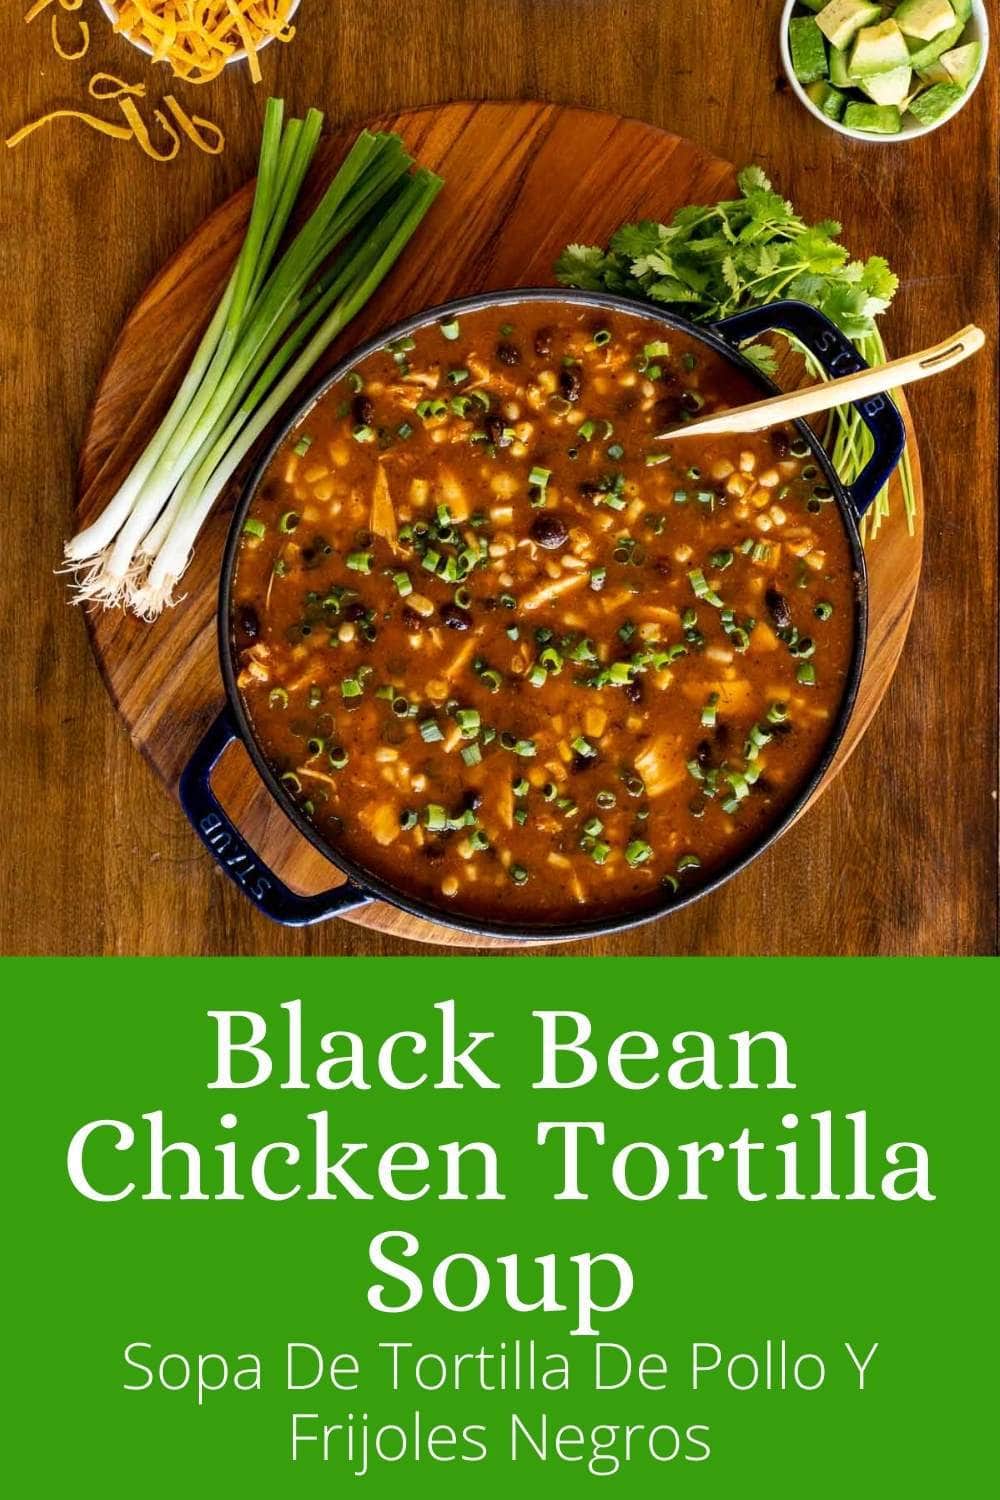 Black Bean Chicken Tortilla Soup (Sopa De Tortilla De Pollo Y Frijoles Negros)